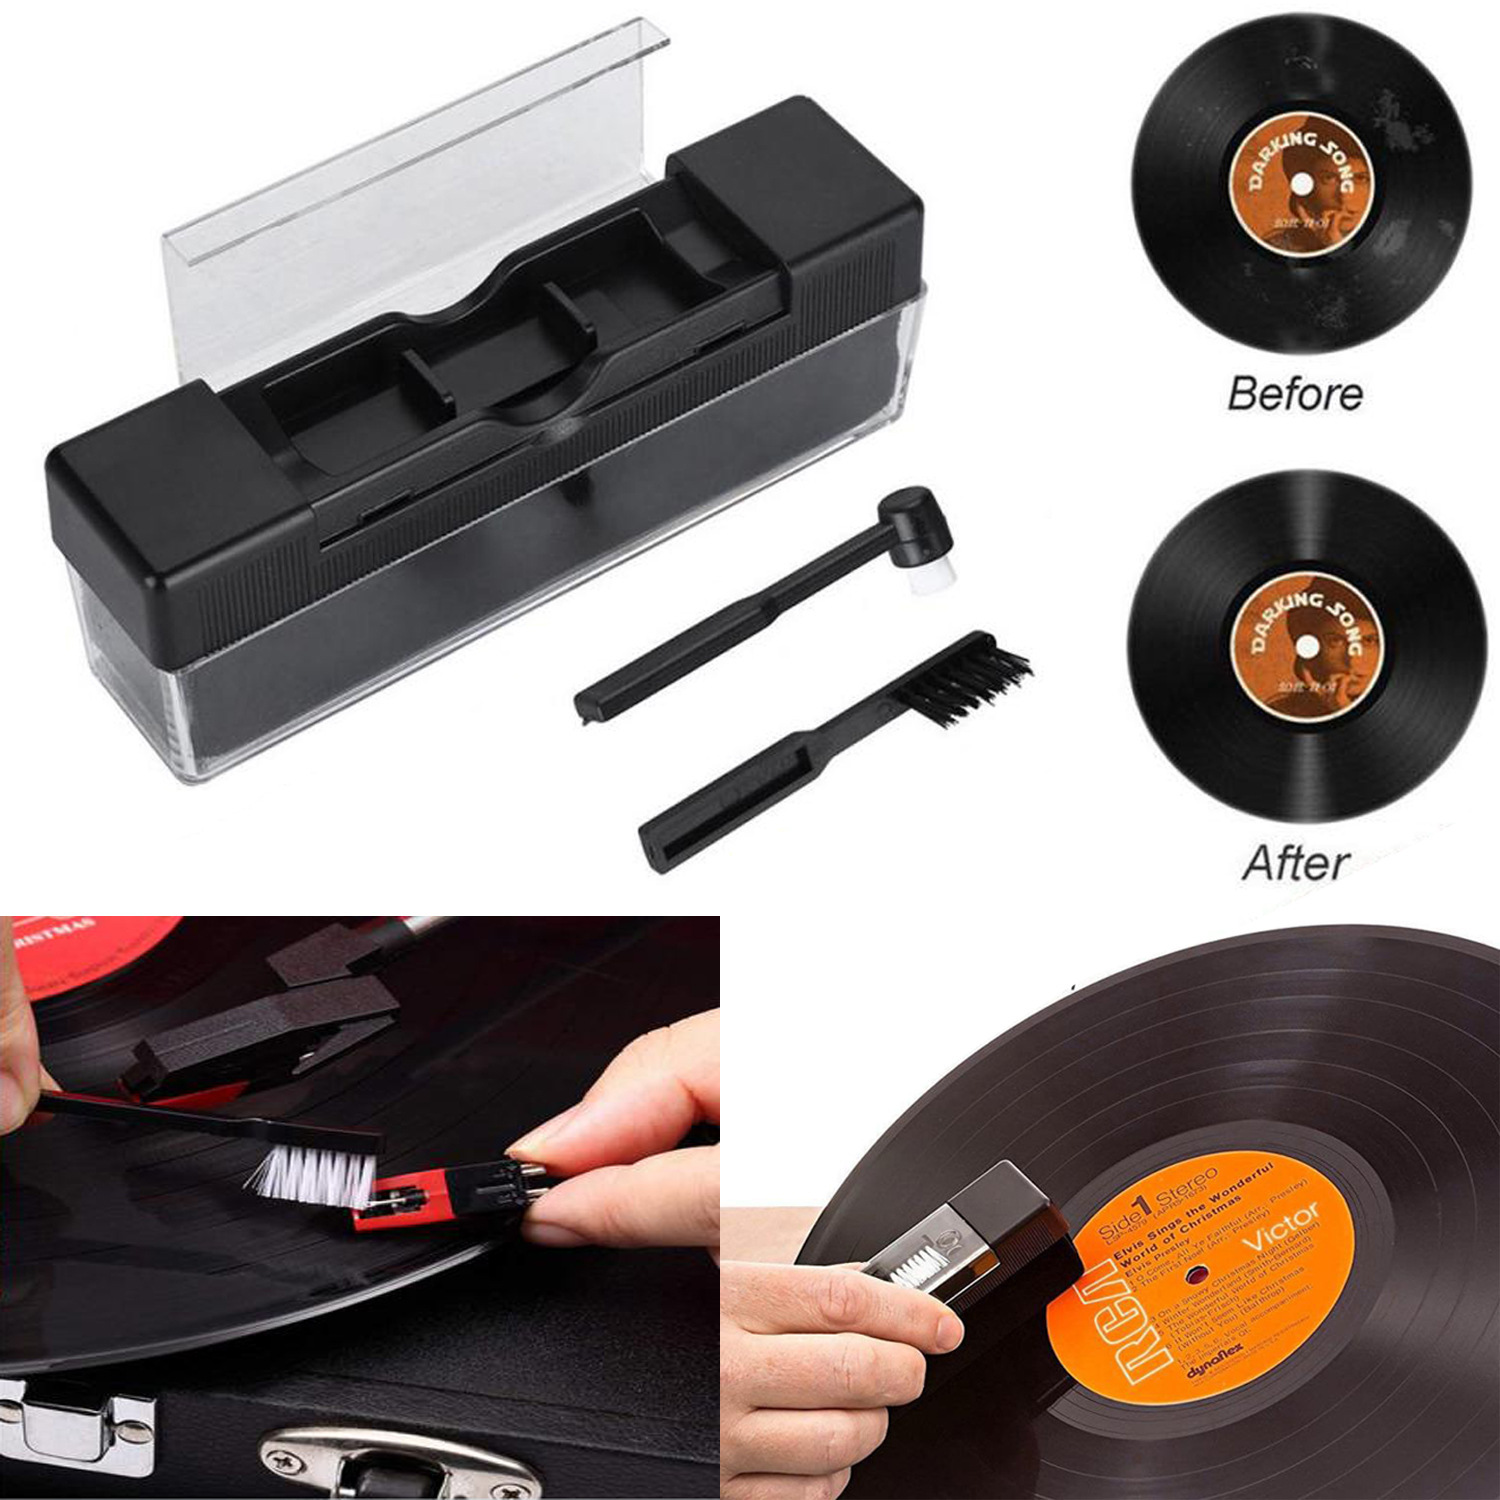 黑胶唱机清洁刷 DJ唱机设备配件黑胶除尘刷套装 唱机护理清洁工具